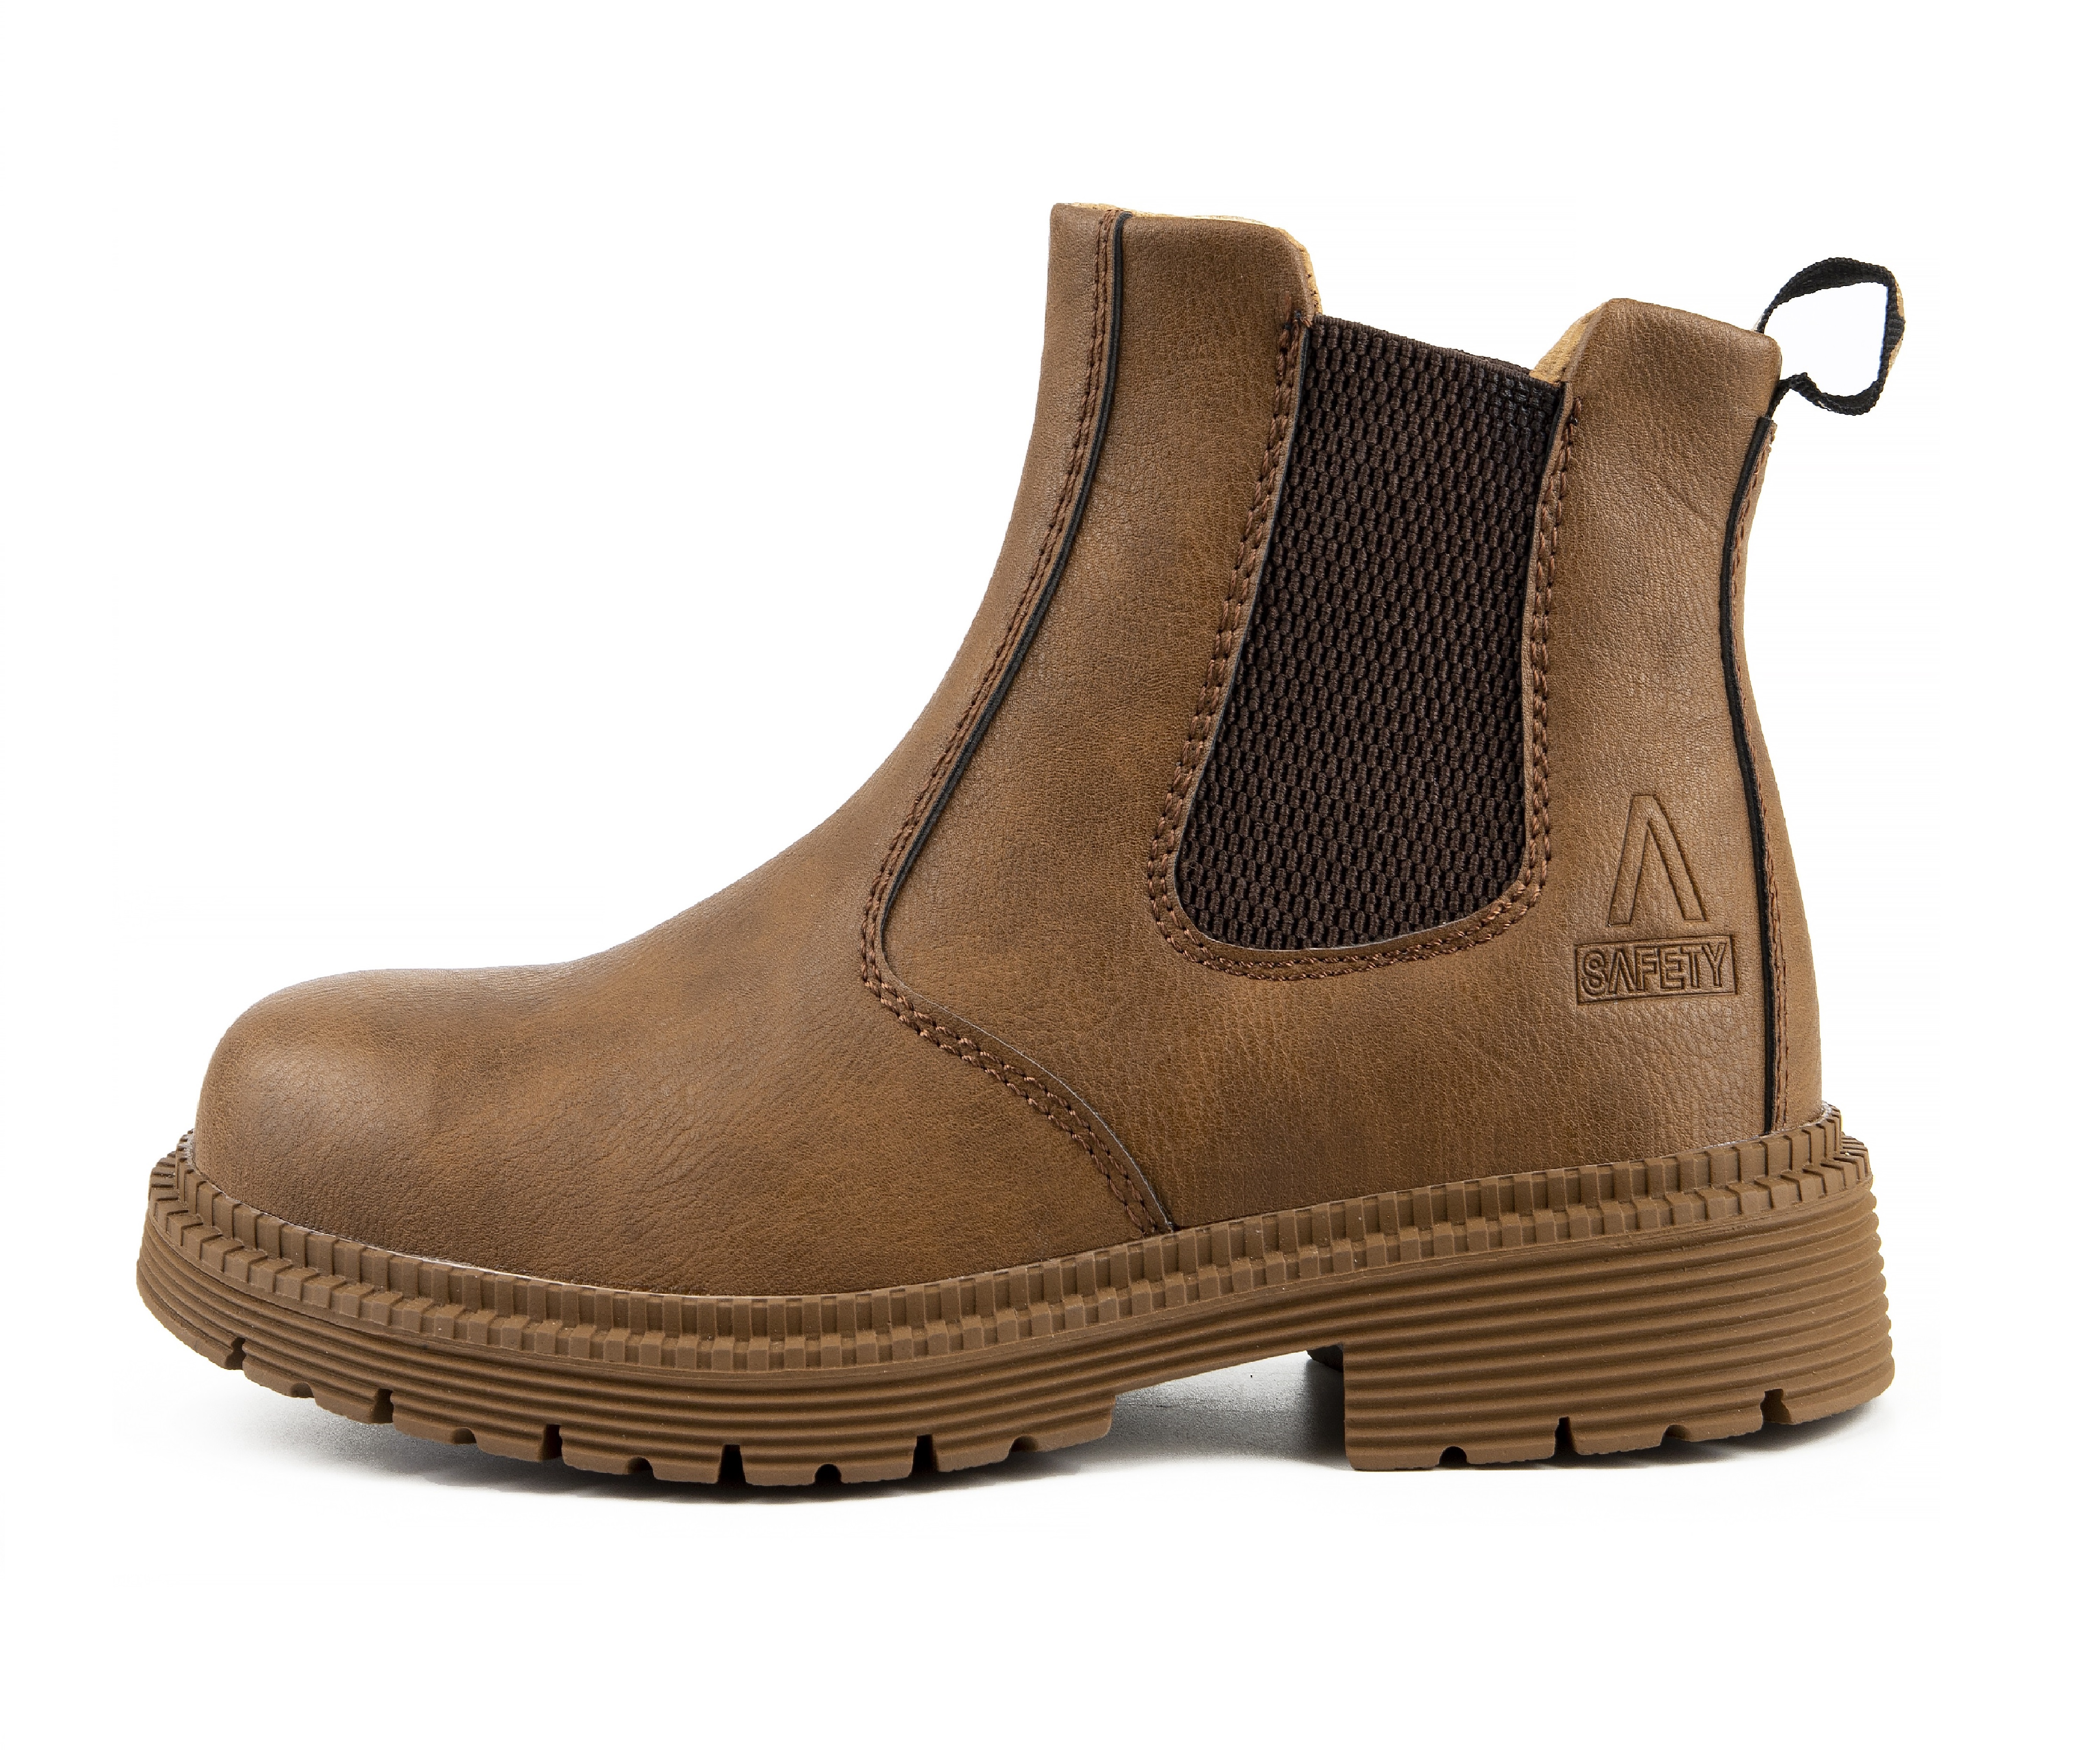 Men's Steel Toe Safety Boots - Model 815 SafeAlex.com